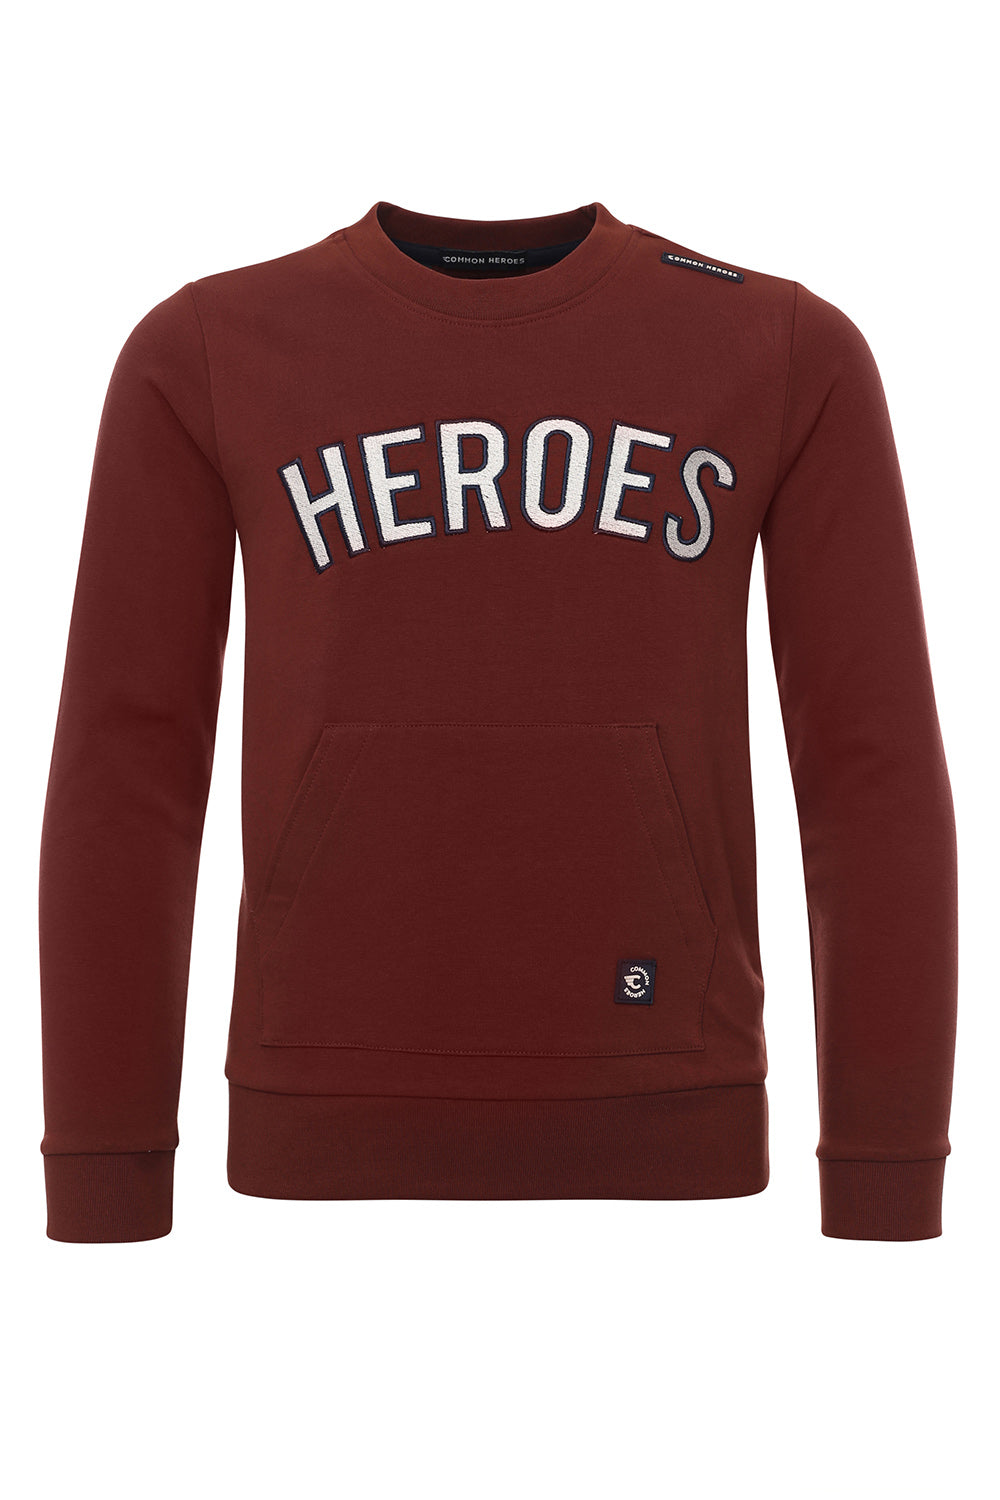 Jongens Crewneck Sweater van Common Heroes in de kleur Dark rust in maat 158-164.